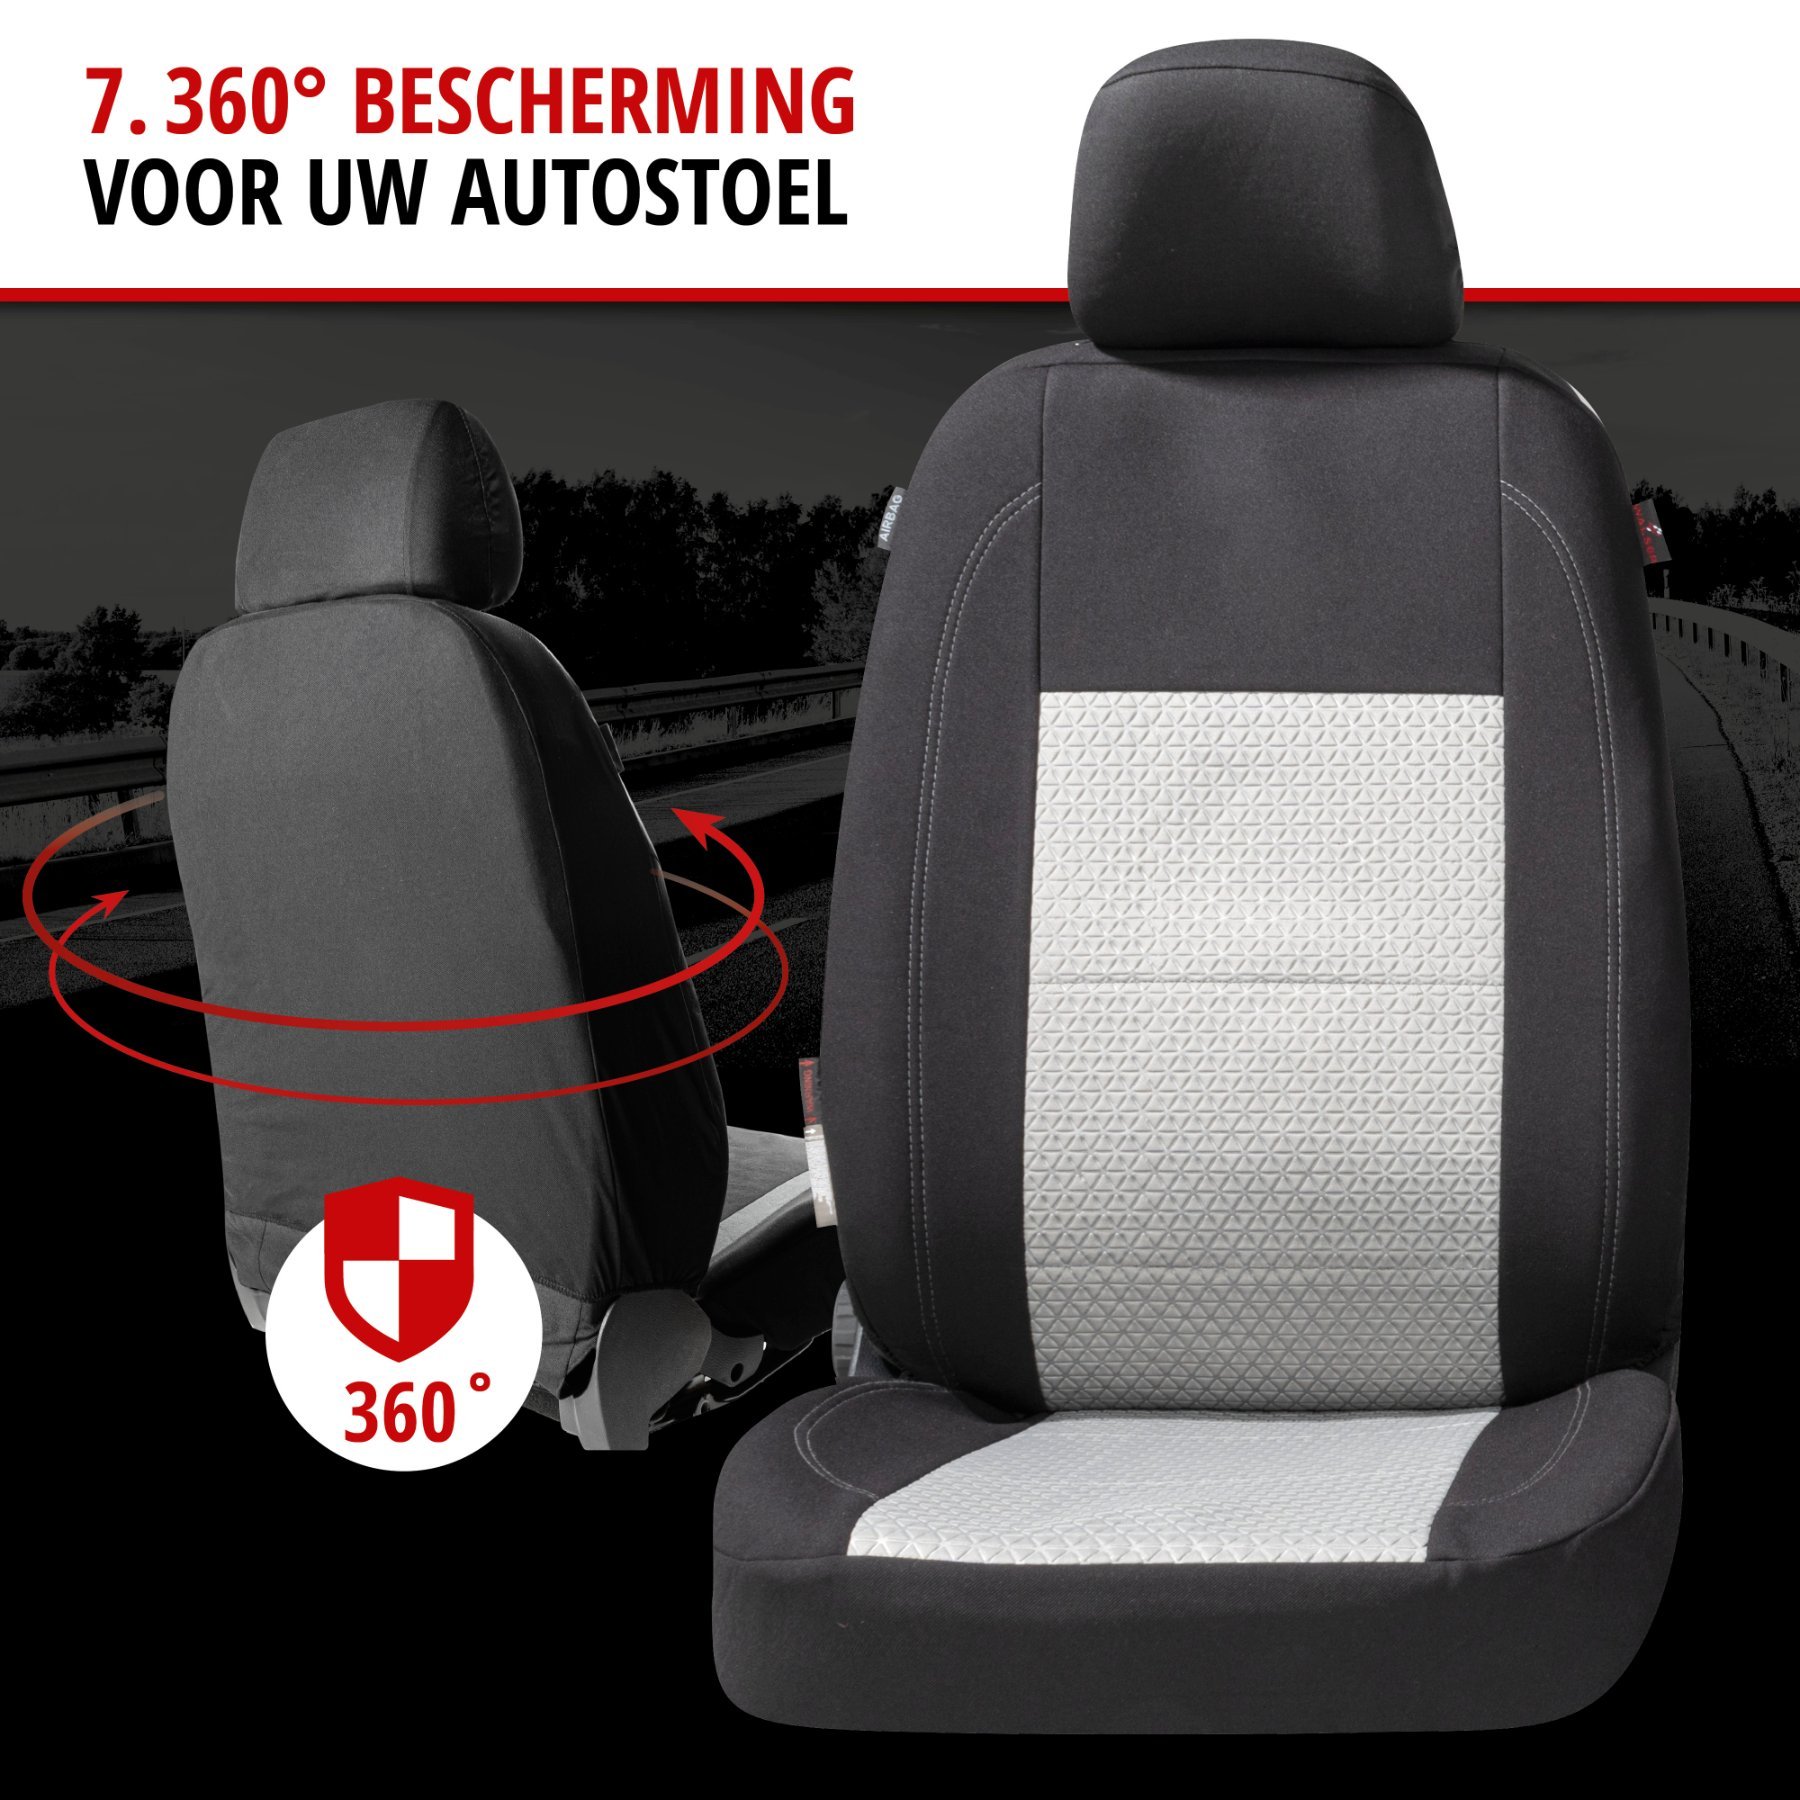 Premium Autostoelbekleding Avignon met Zipper ZIPP-IT, Autostoelhoes set, 2 stoelbeschermer voor voorstoel, 1 stoelbeschermer voor achterbank zwart/silber